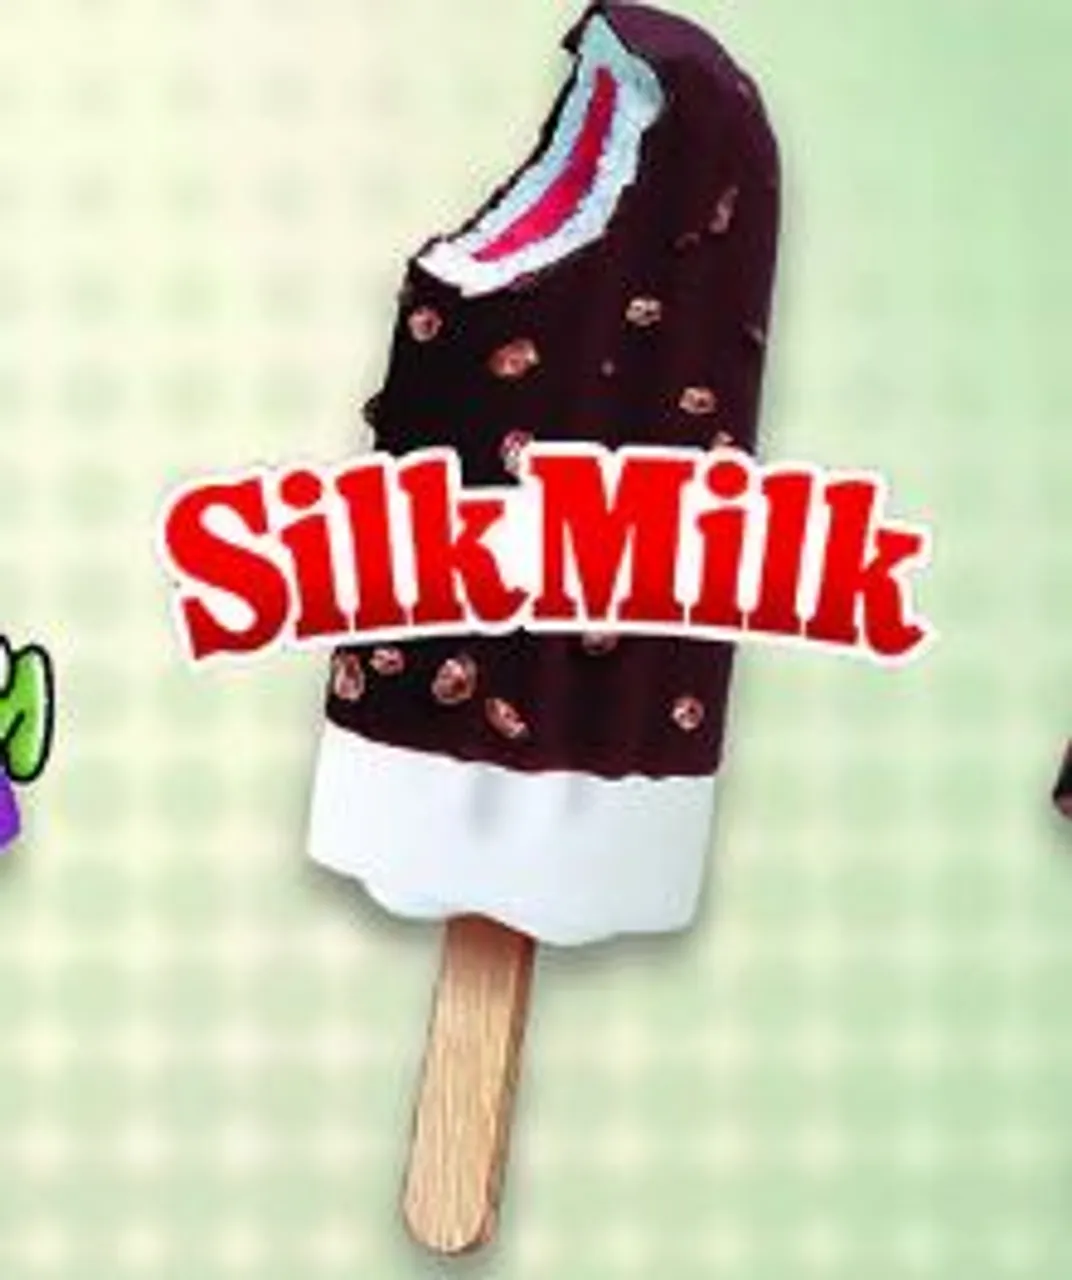 Budimo nostalgiju, ali ovaj put SLADOLEDIMA: Njofra, Silk Milk - koji je tvoj omiljeni?